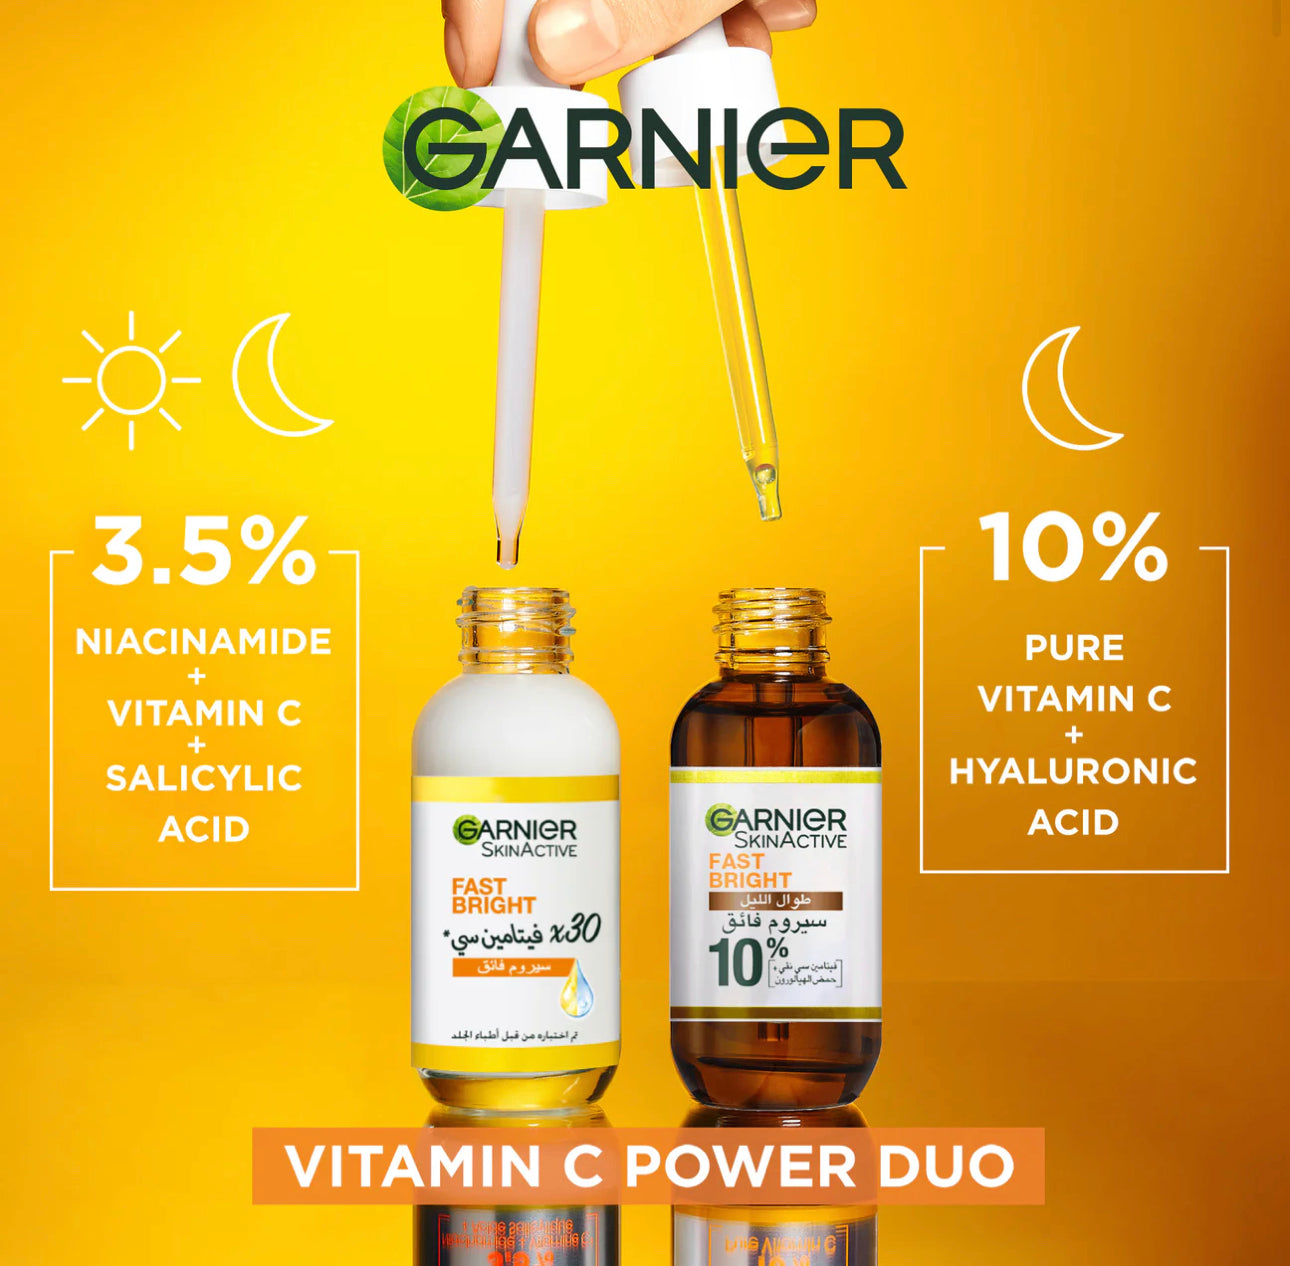 Garnier Fast Bright 10%, Pure Vitamin C & Hyaloronic Acid - Brightening Night Serum